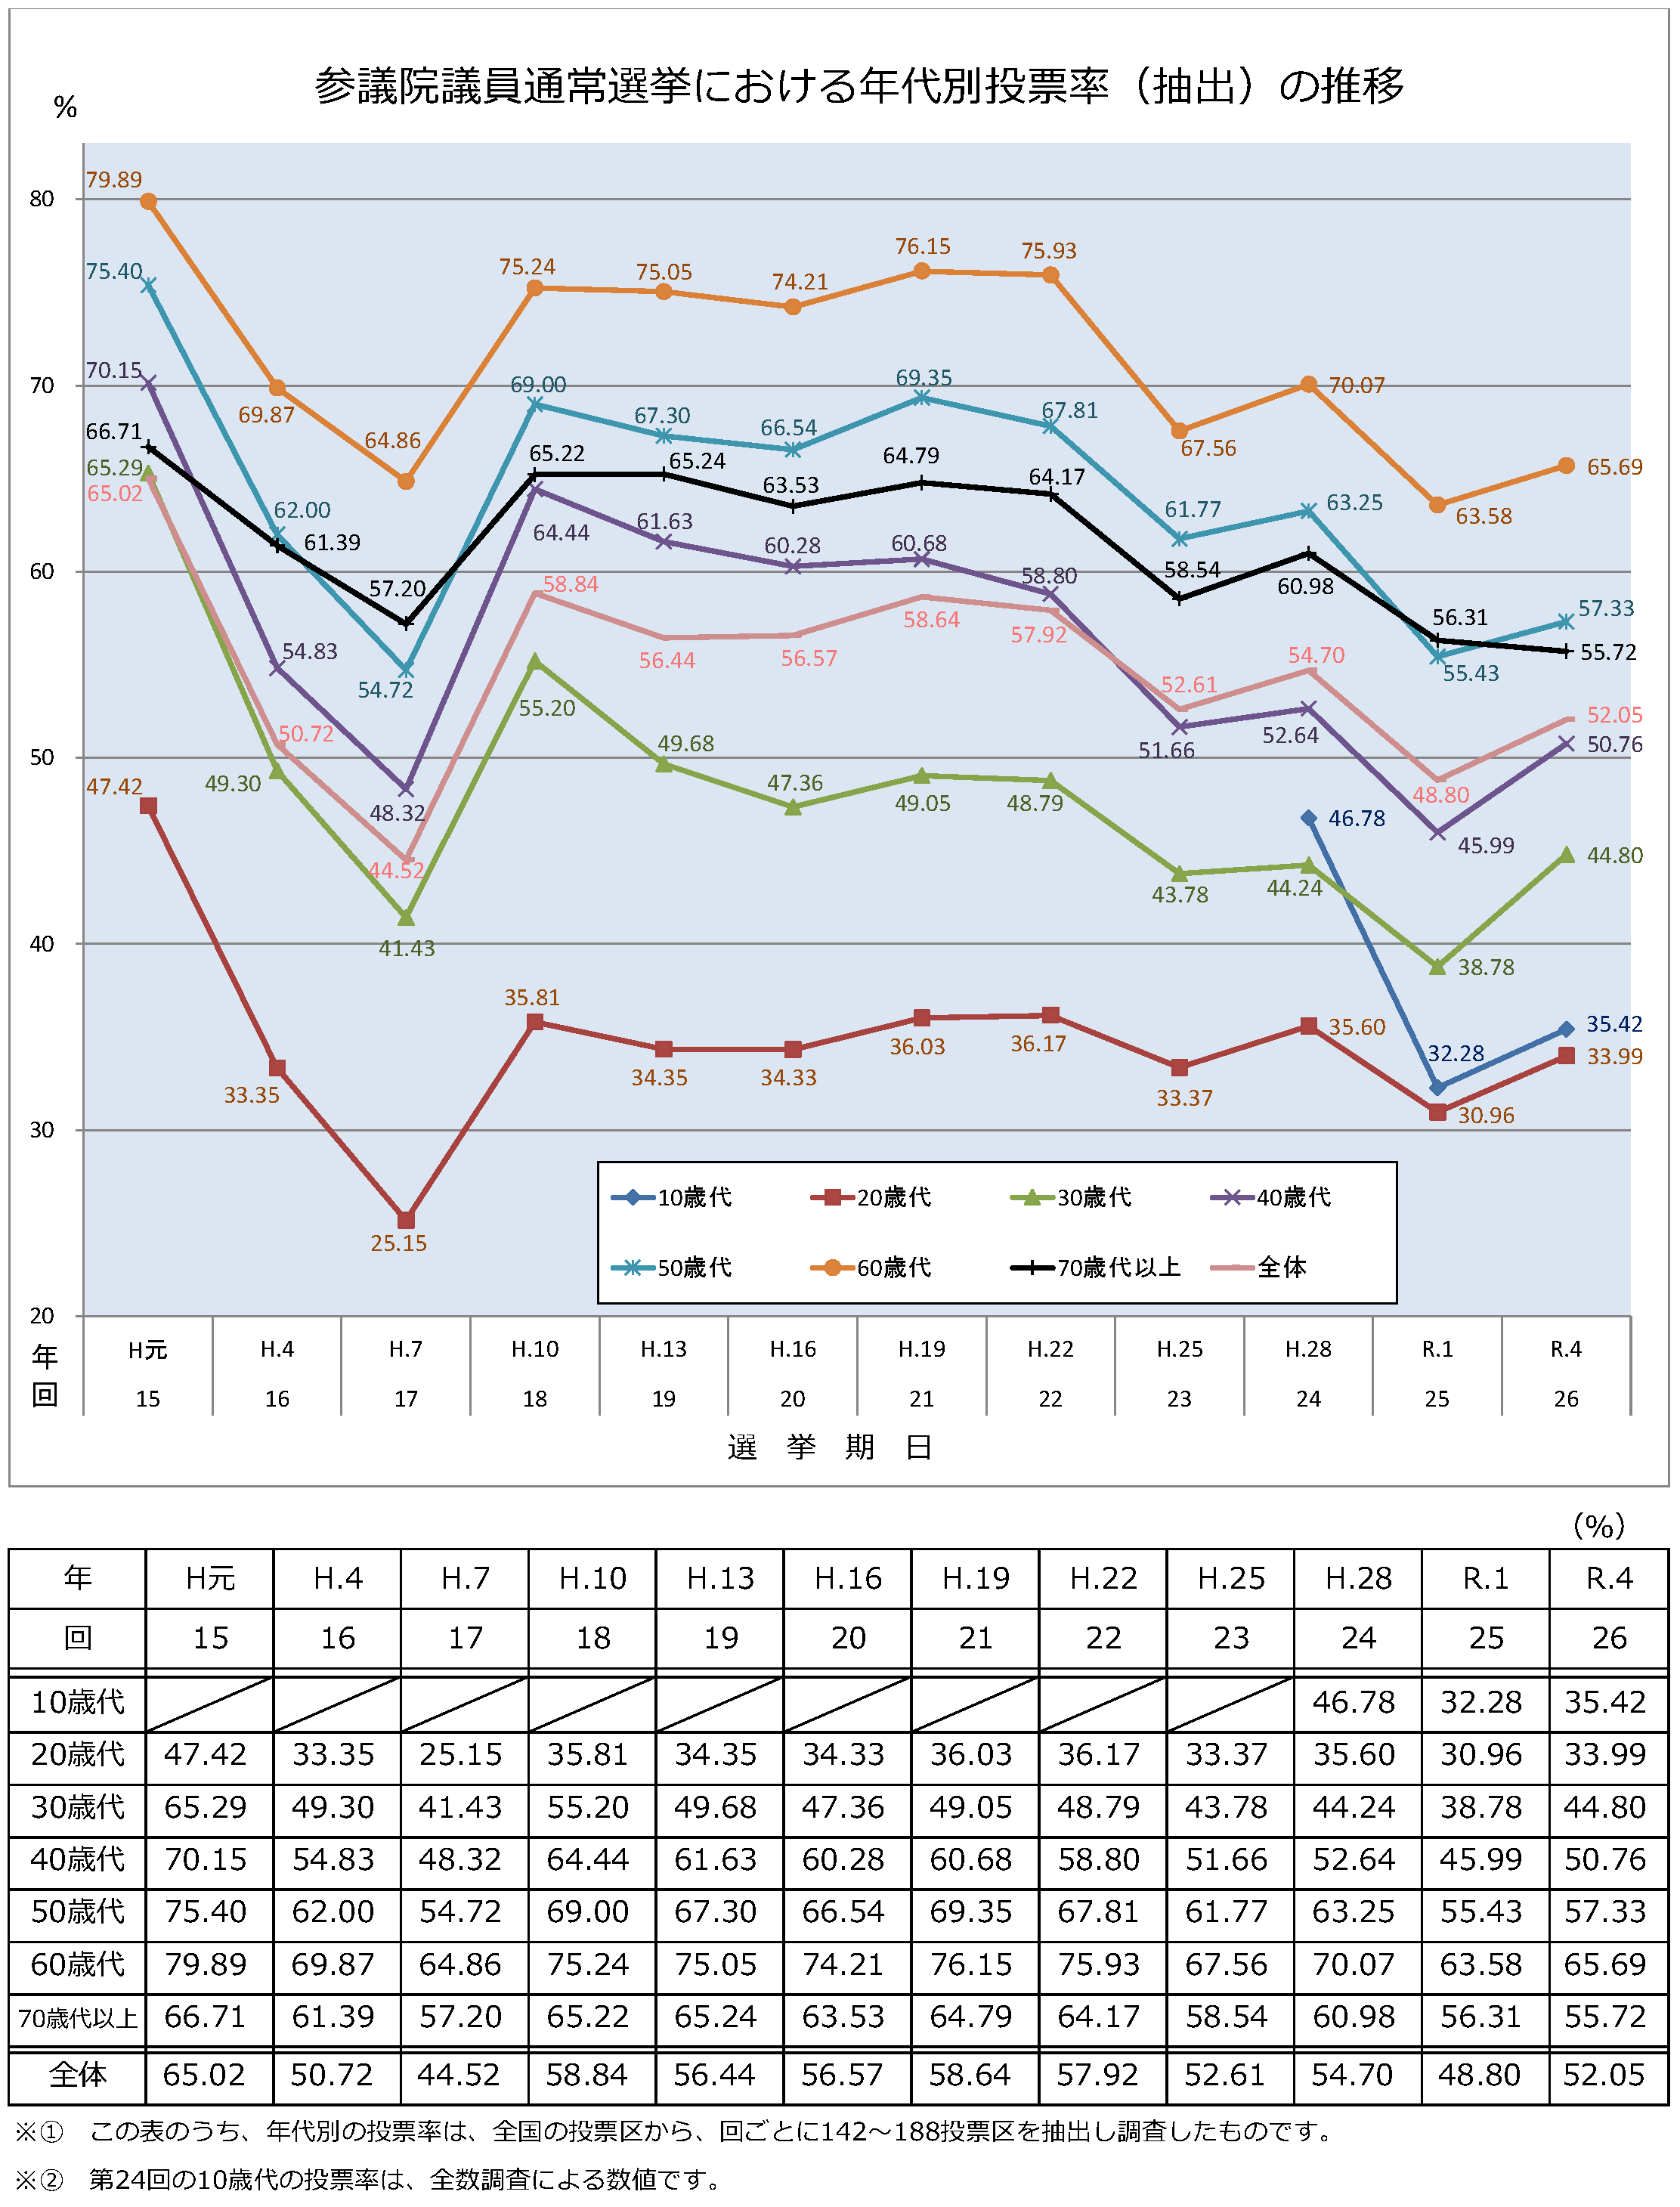 参議院議員通常選挙における年代別投票率の推移のグラフ　詳細はPDFを参照